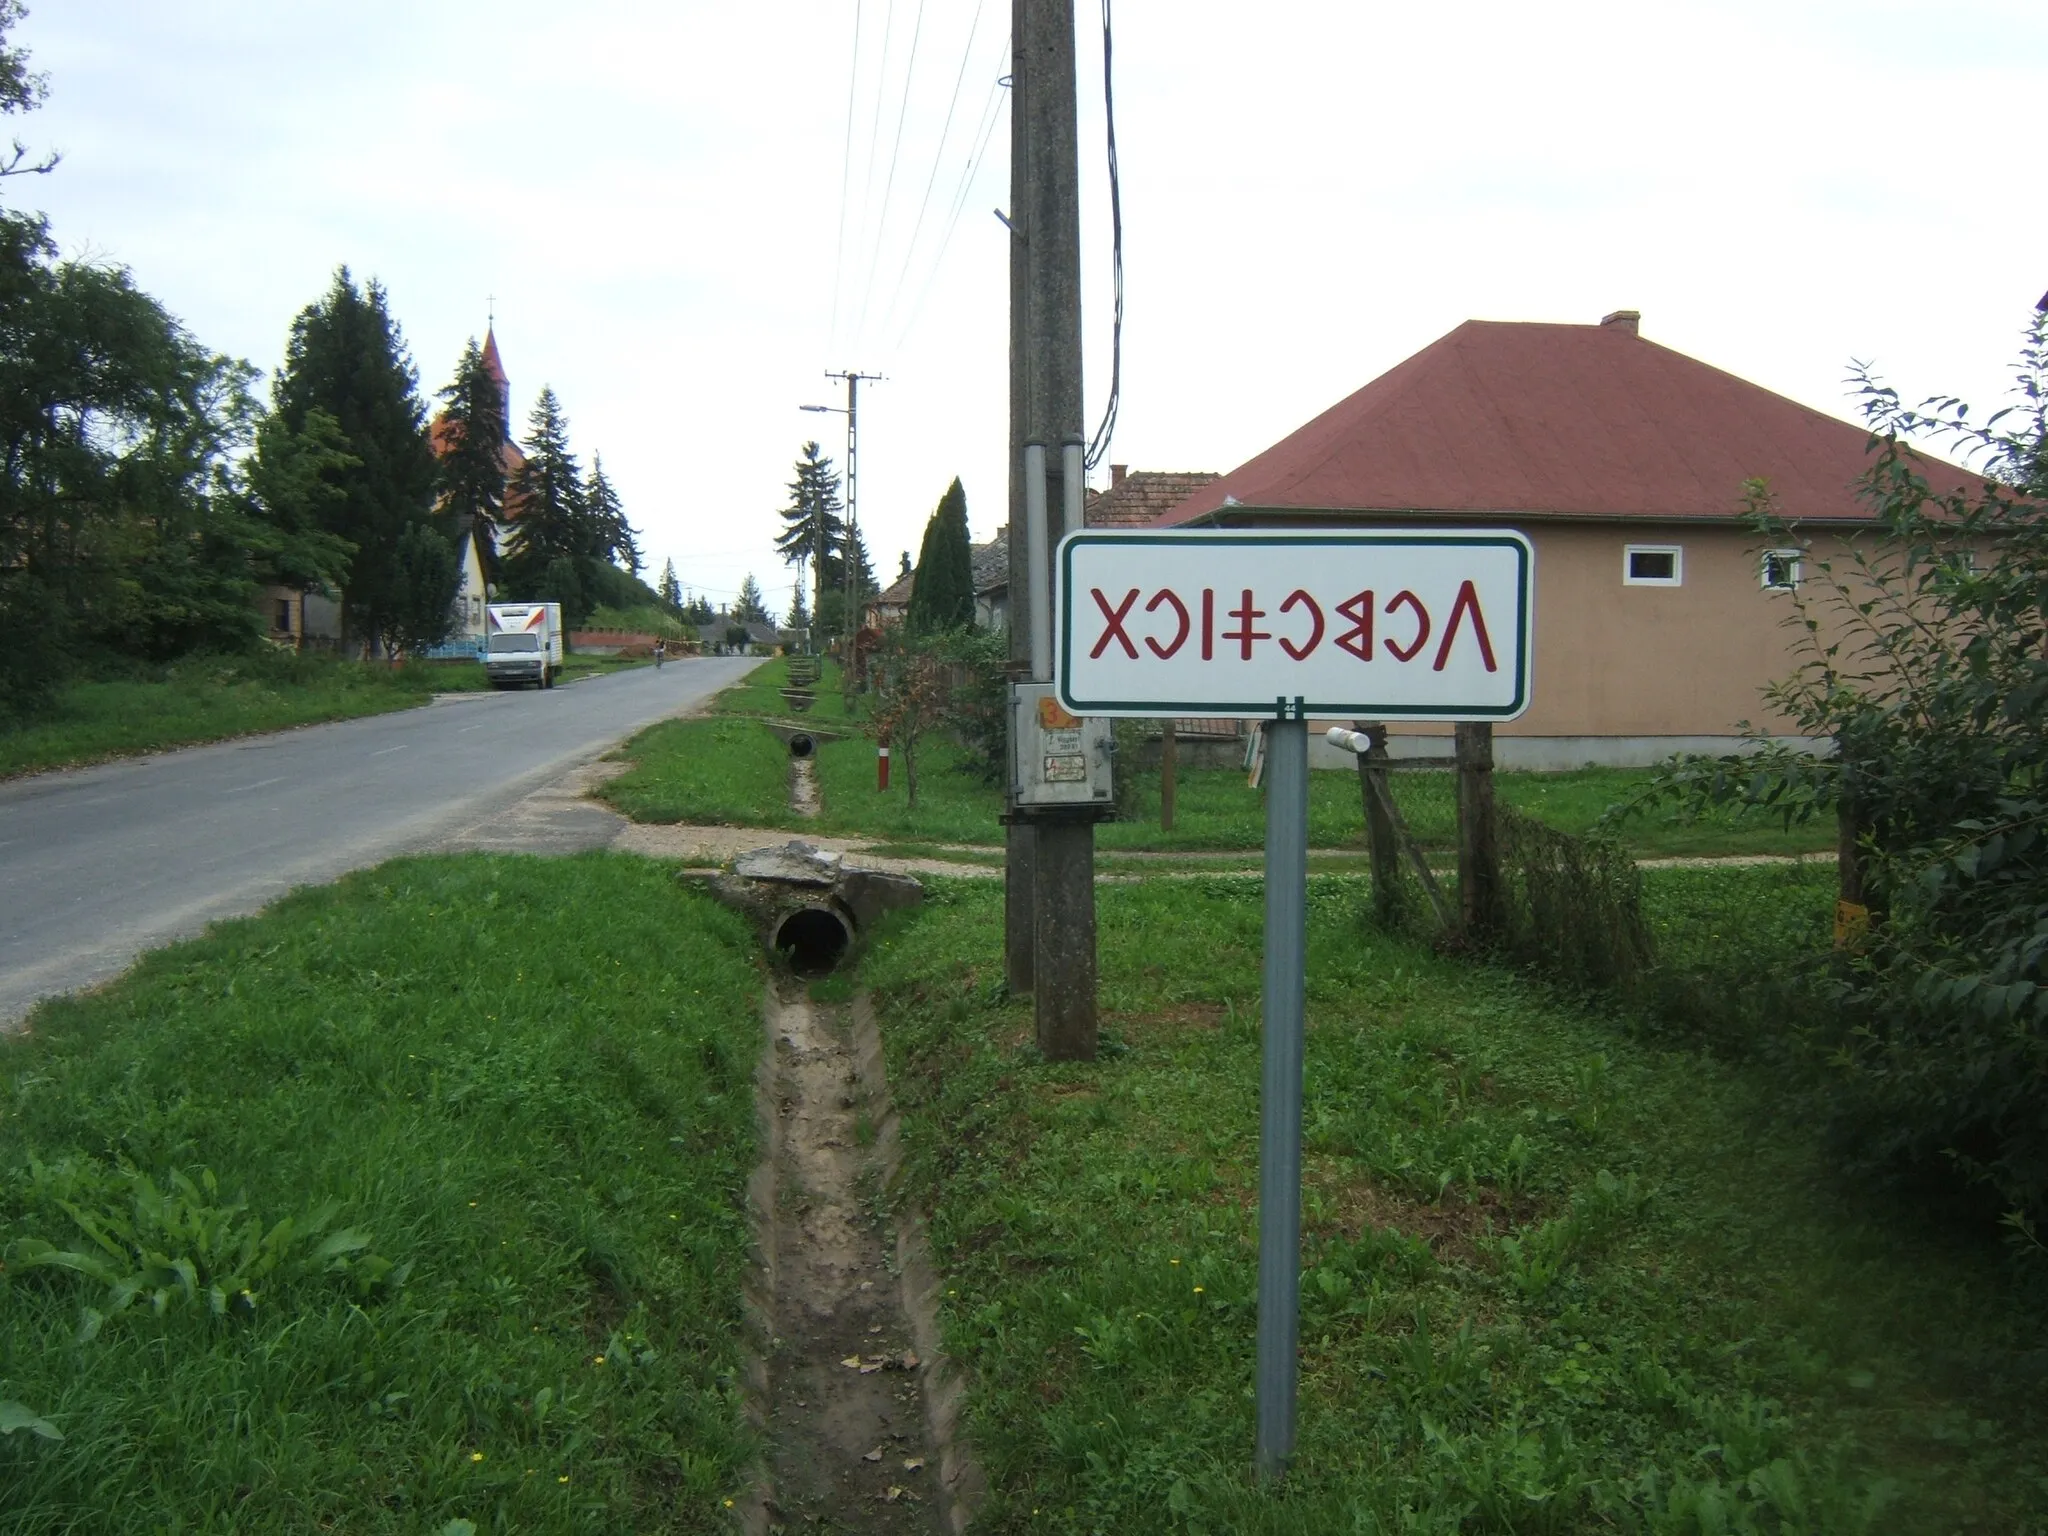 Photo showing: Székely-magyar rovásfeliratos tábla Somogyszob határában, 6814-es út, észak (Segesd) felől jövet